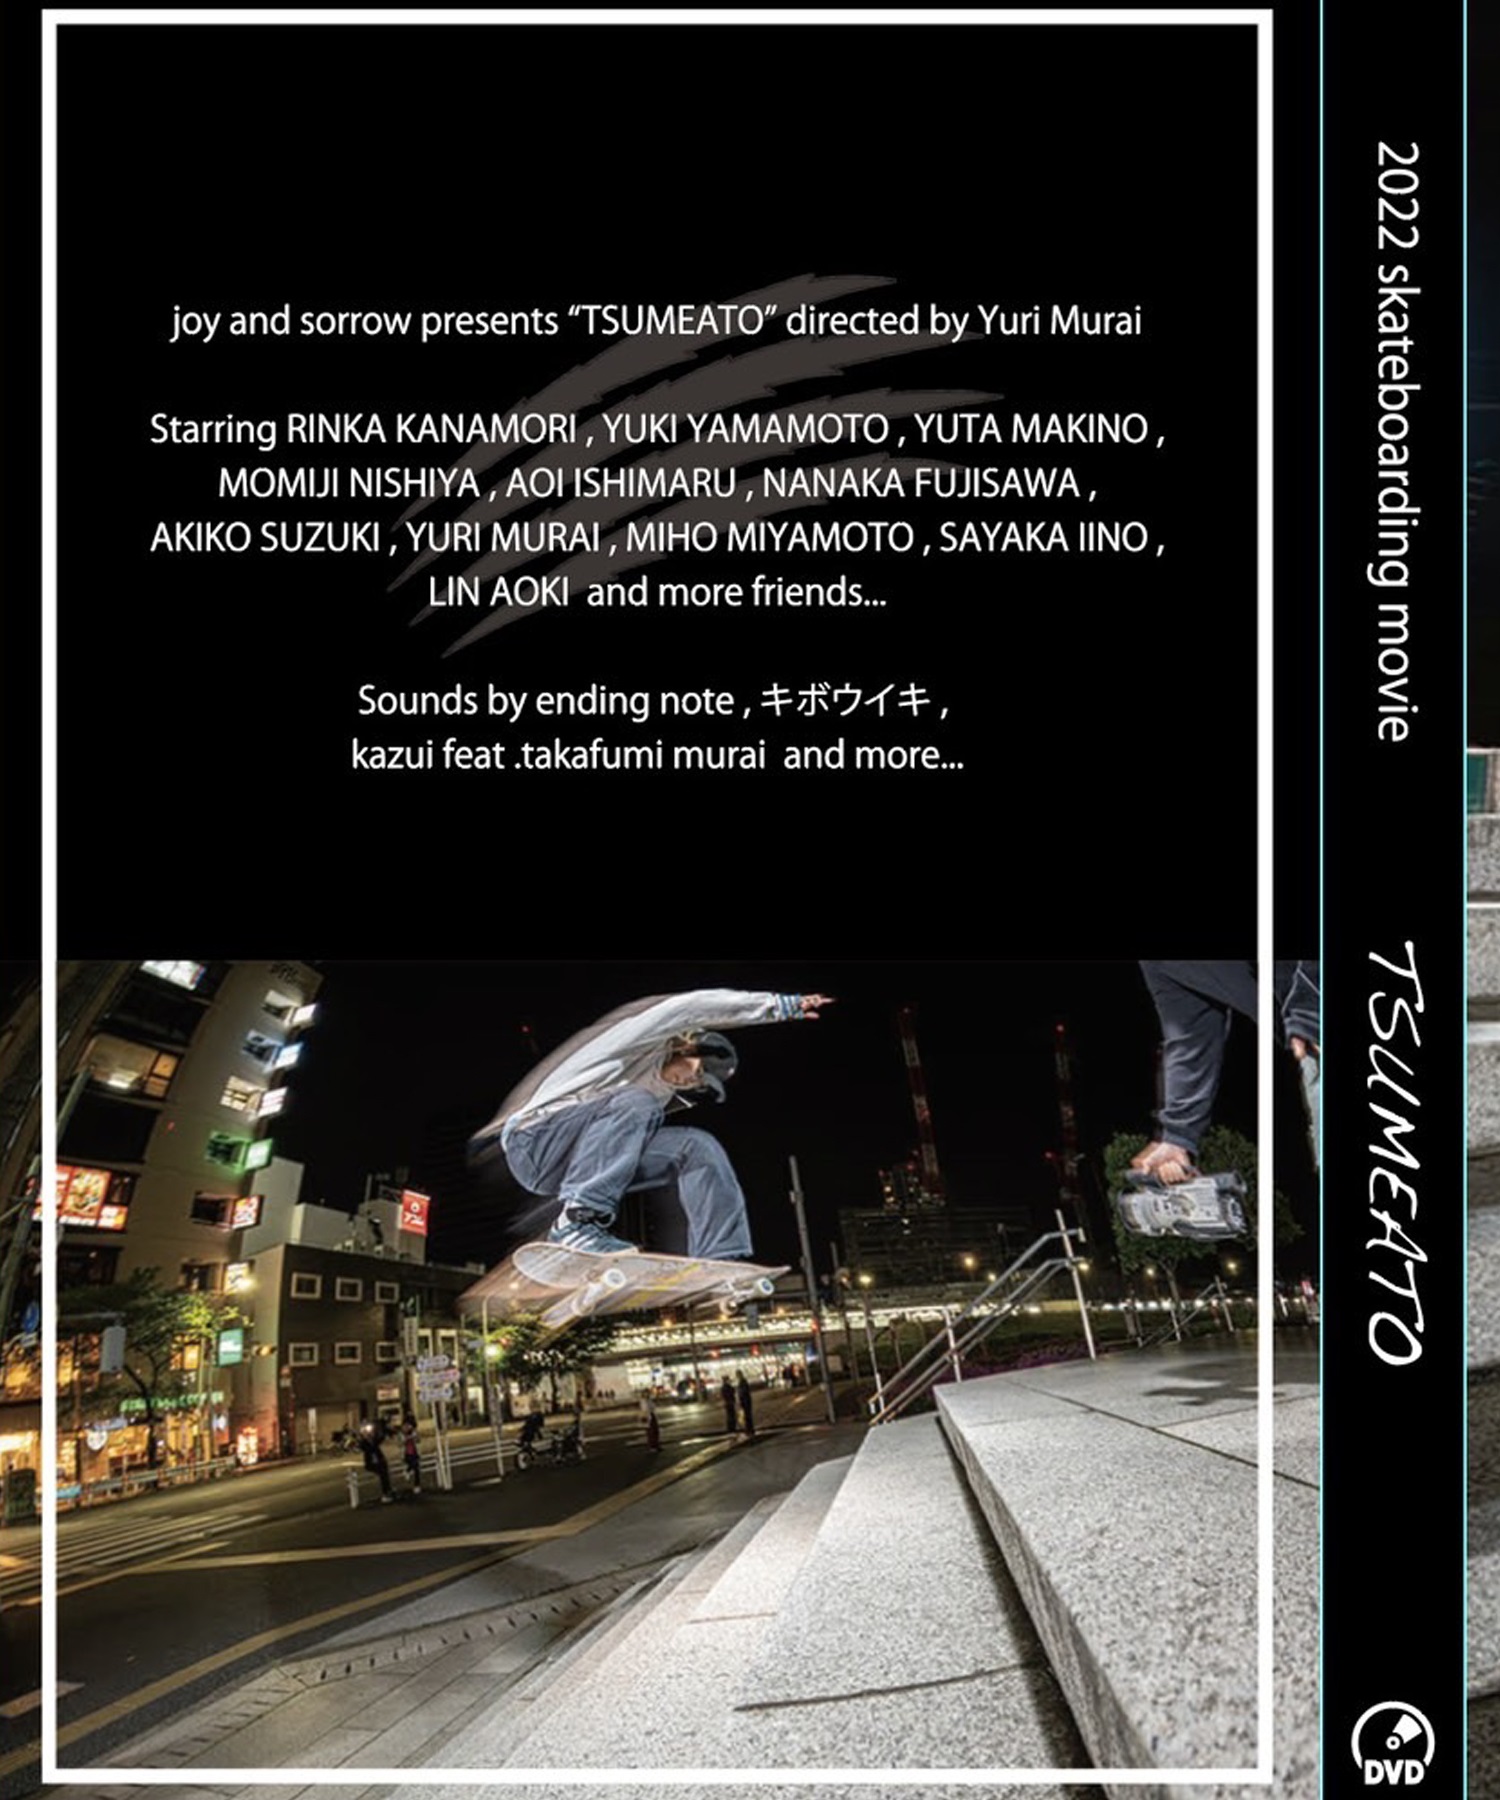 スケートボード DVD 映像作品 TSUMEATO OSSK3 KK G14('ONECOLOR-ONESIZE)